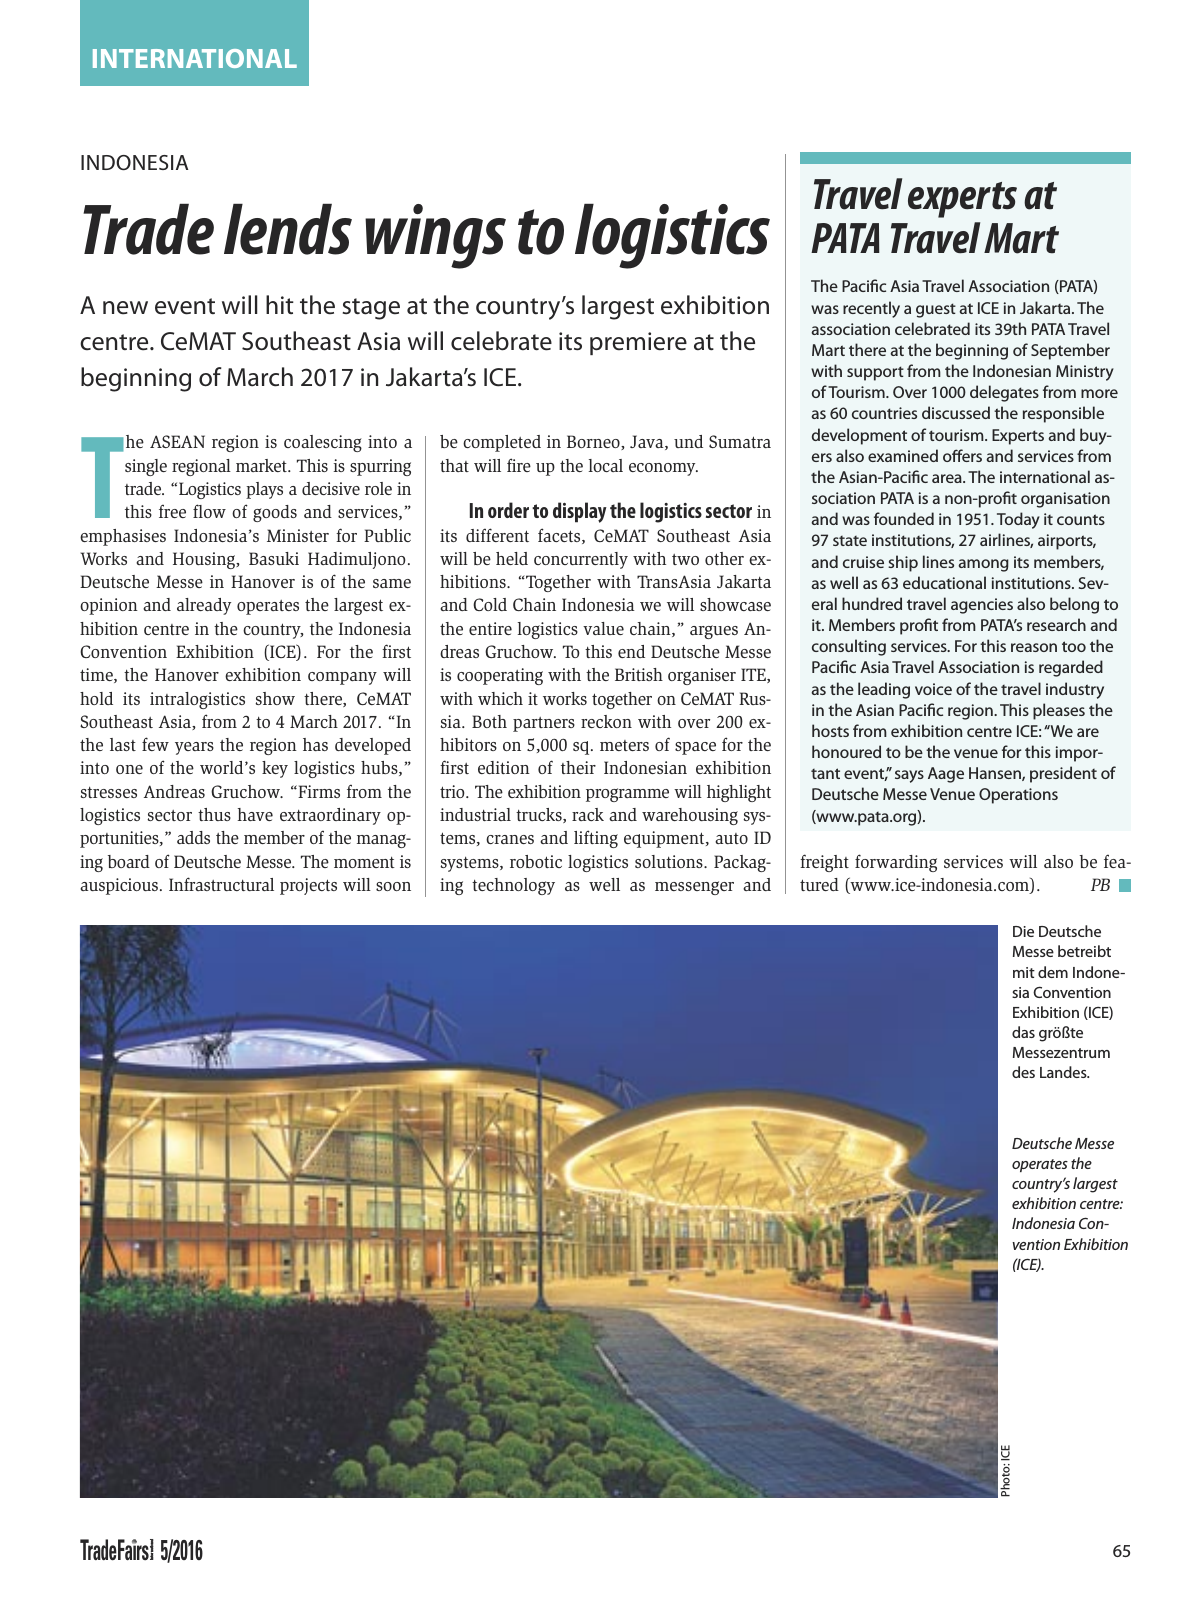 Vorschau TFI Trade-Fairs-International 05/2016 Seite 65